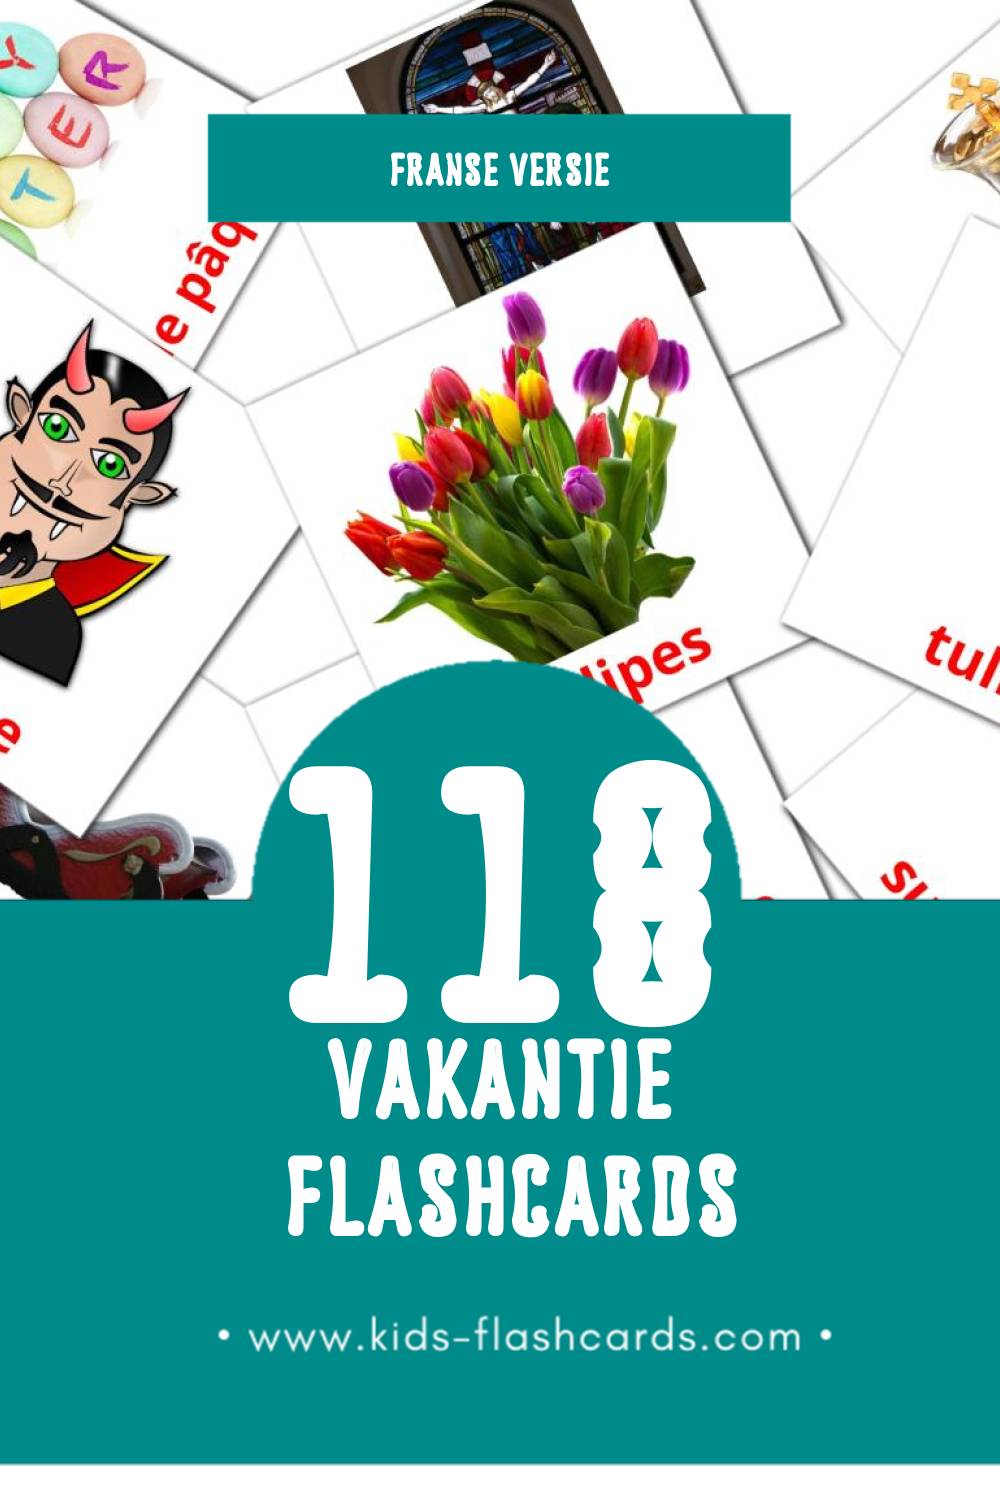 Visuele Les Vacances Flashcards voor Kleuters (118 kaarten in het Frans)